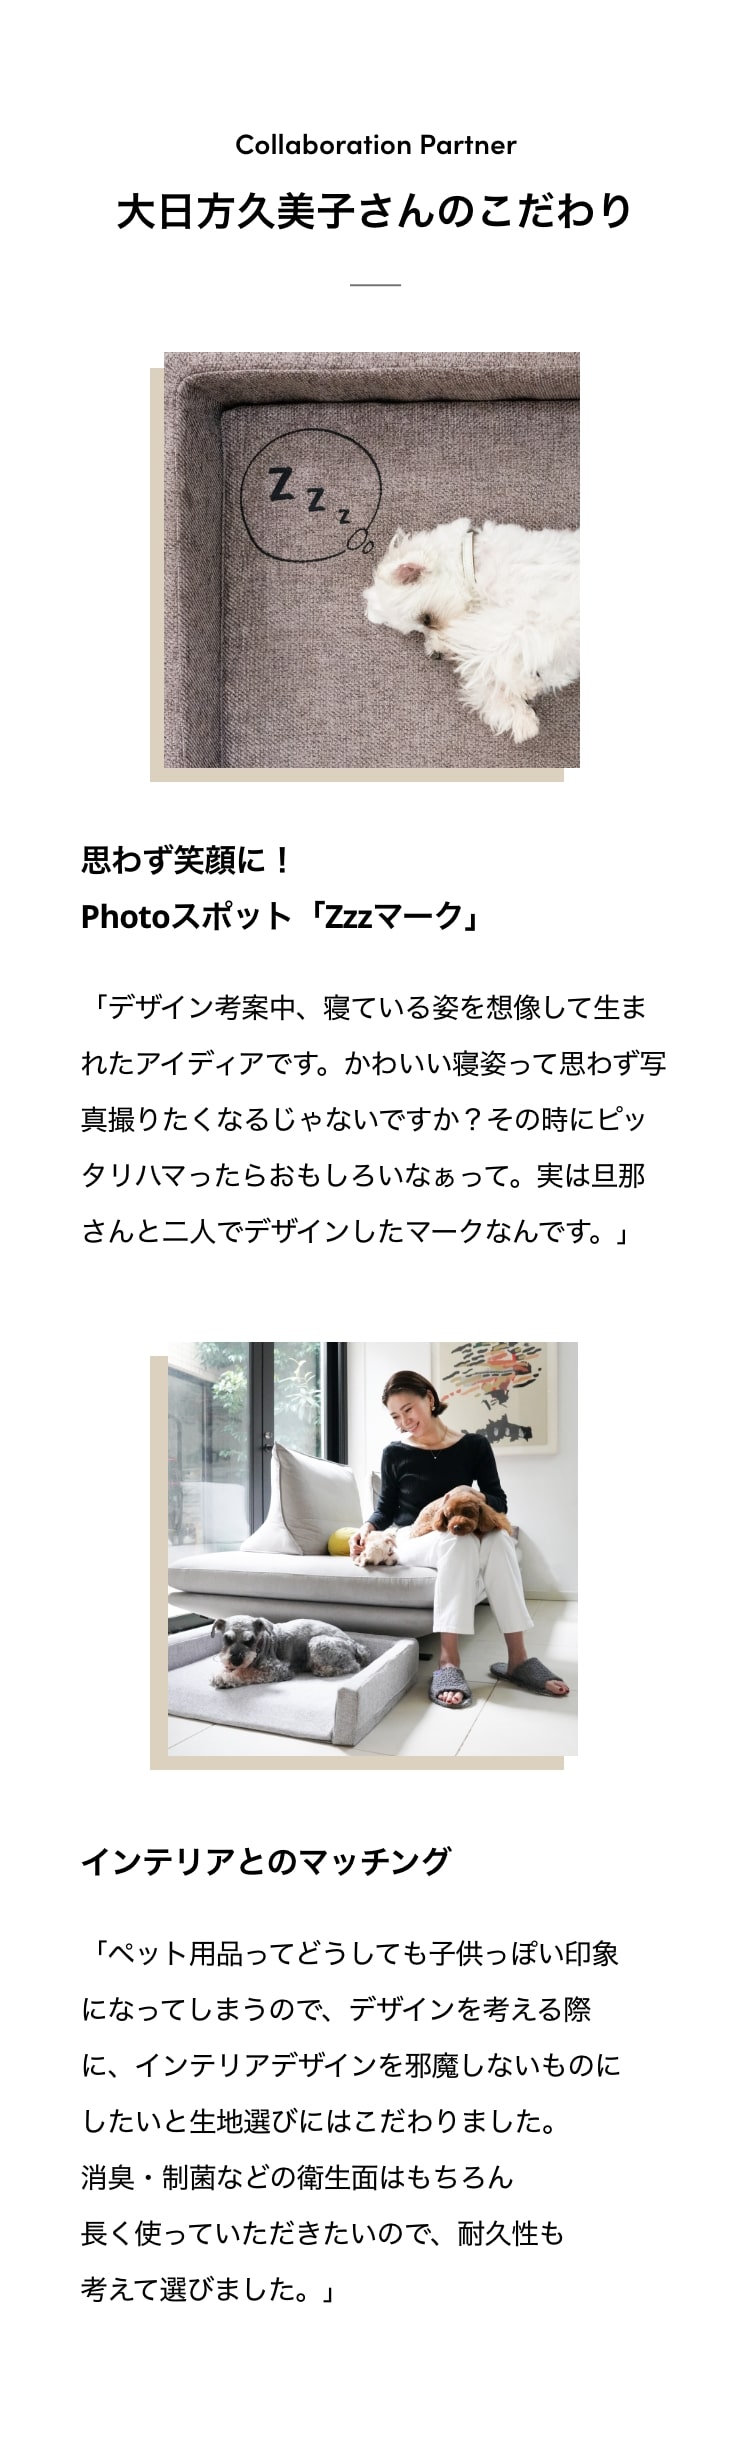 大日方久美子さんのこだわり
                                                                                                    思わず笑顔に！Photoスポット「Zzzマーク」
                                                                                                    インテリアとのマッチング